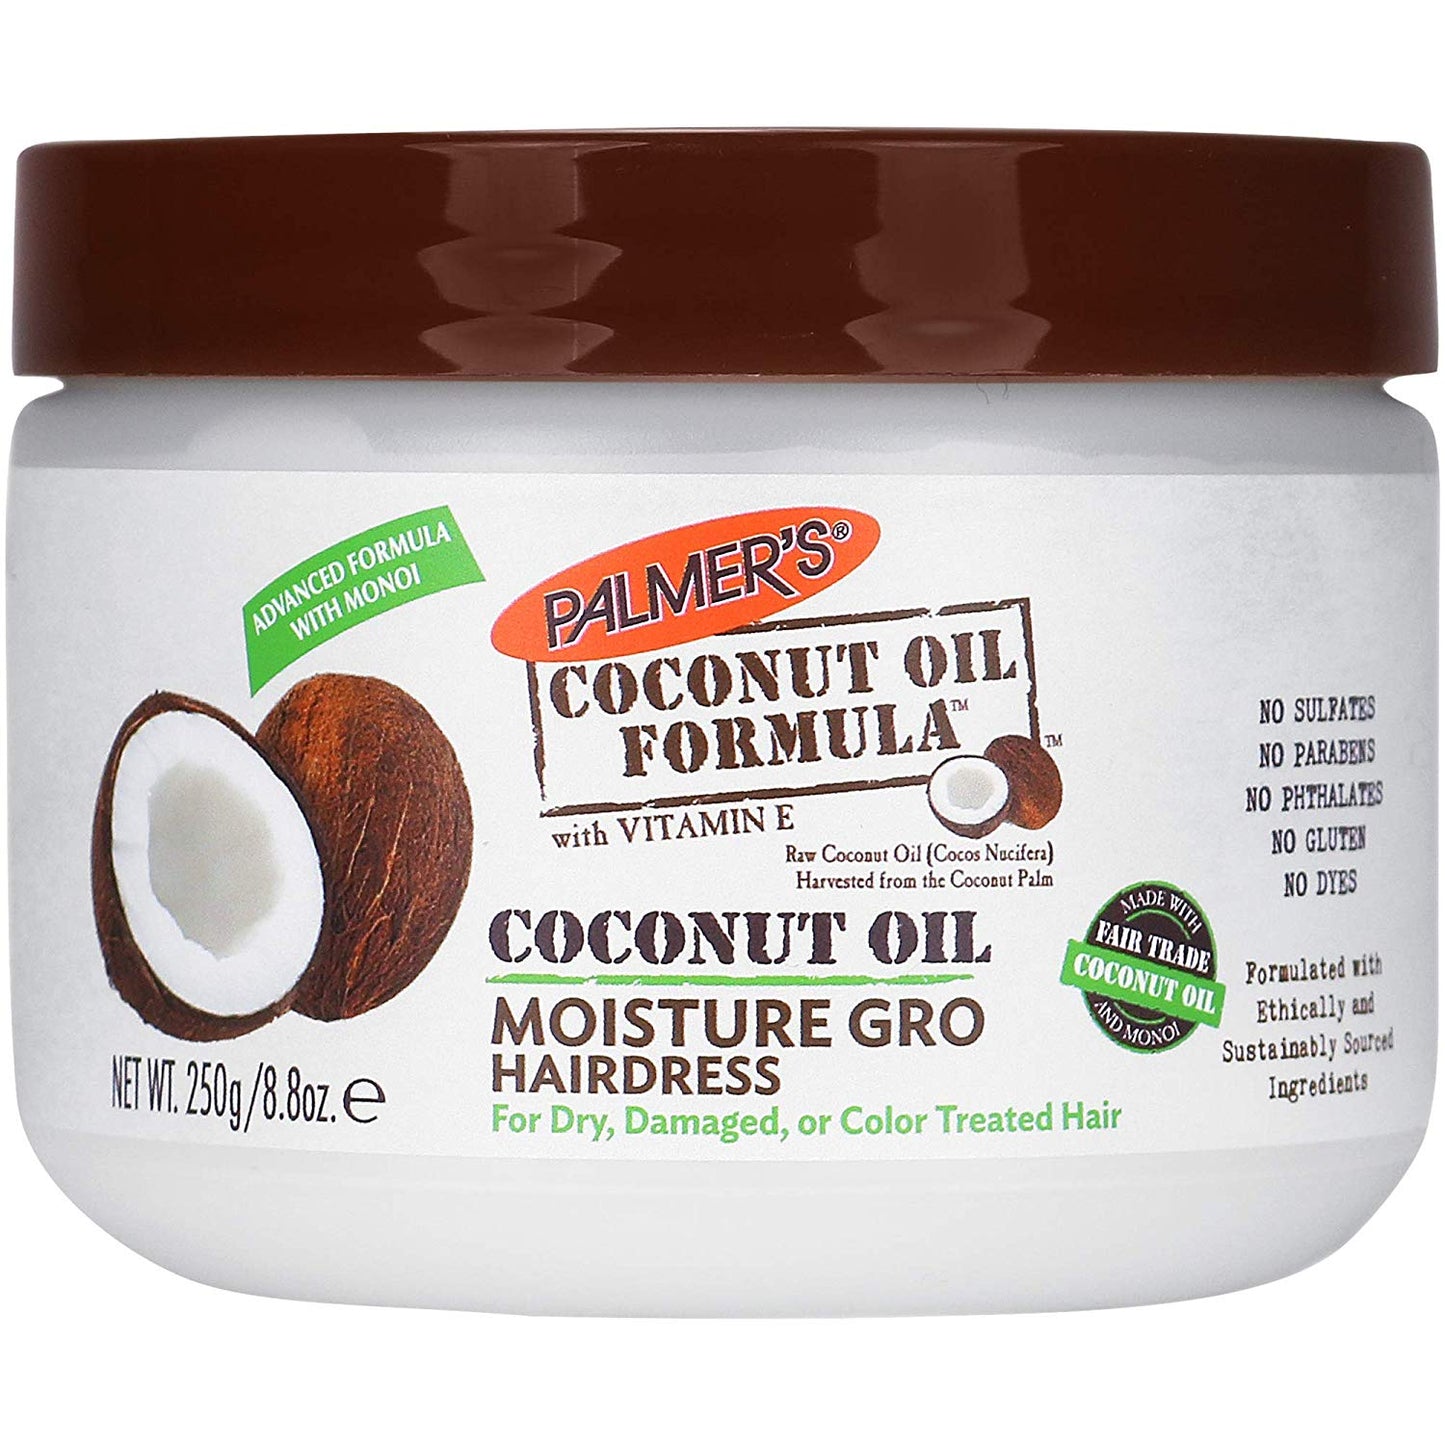 Palmer's Coconut Oil Formula Moisture Gro Hairdress